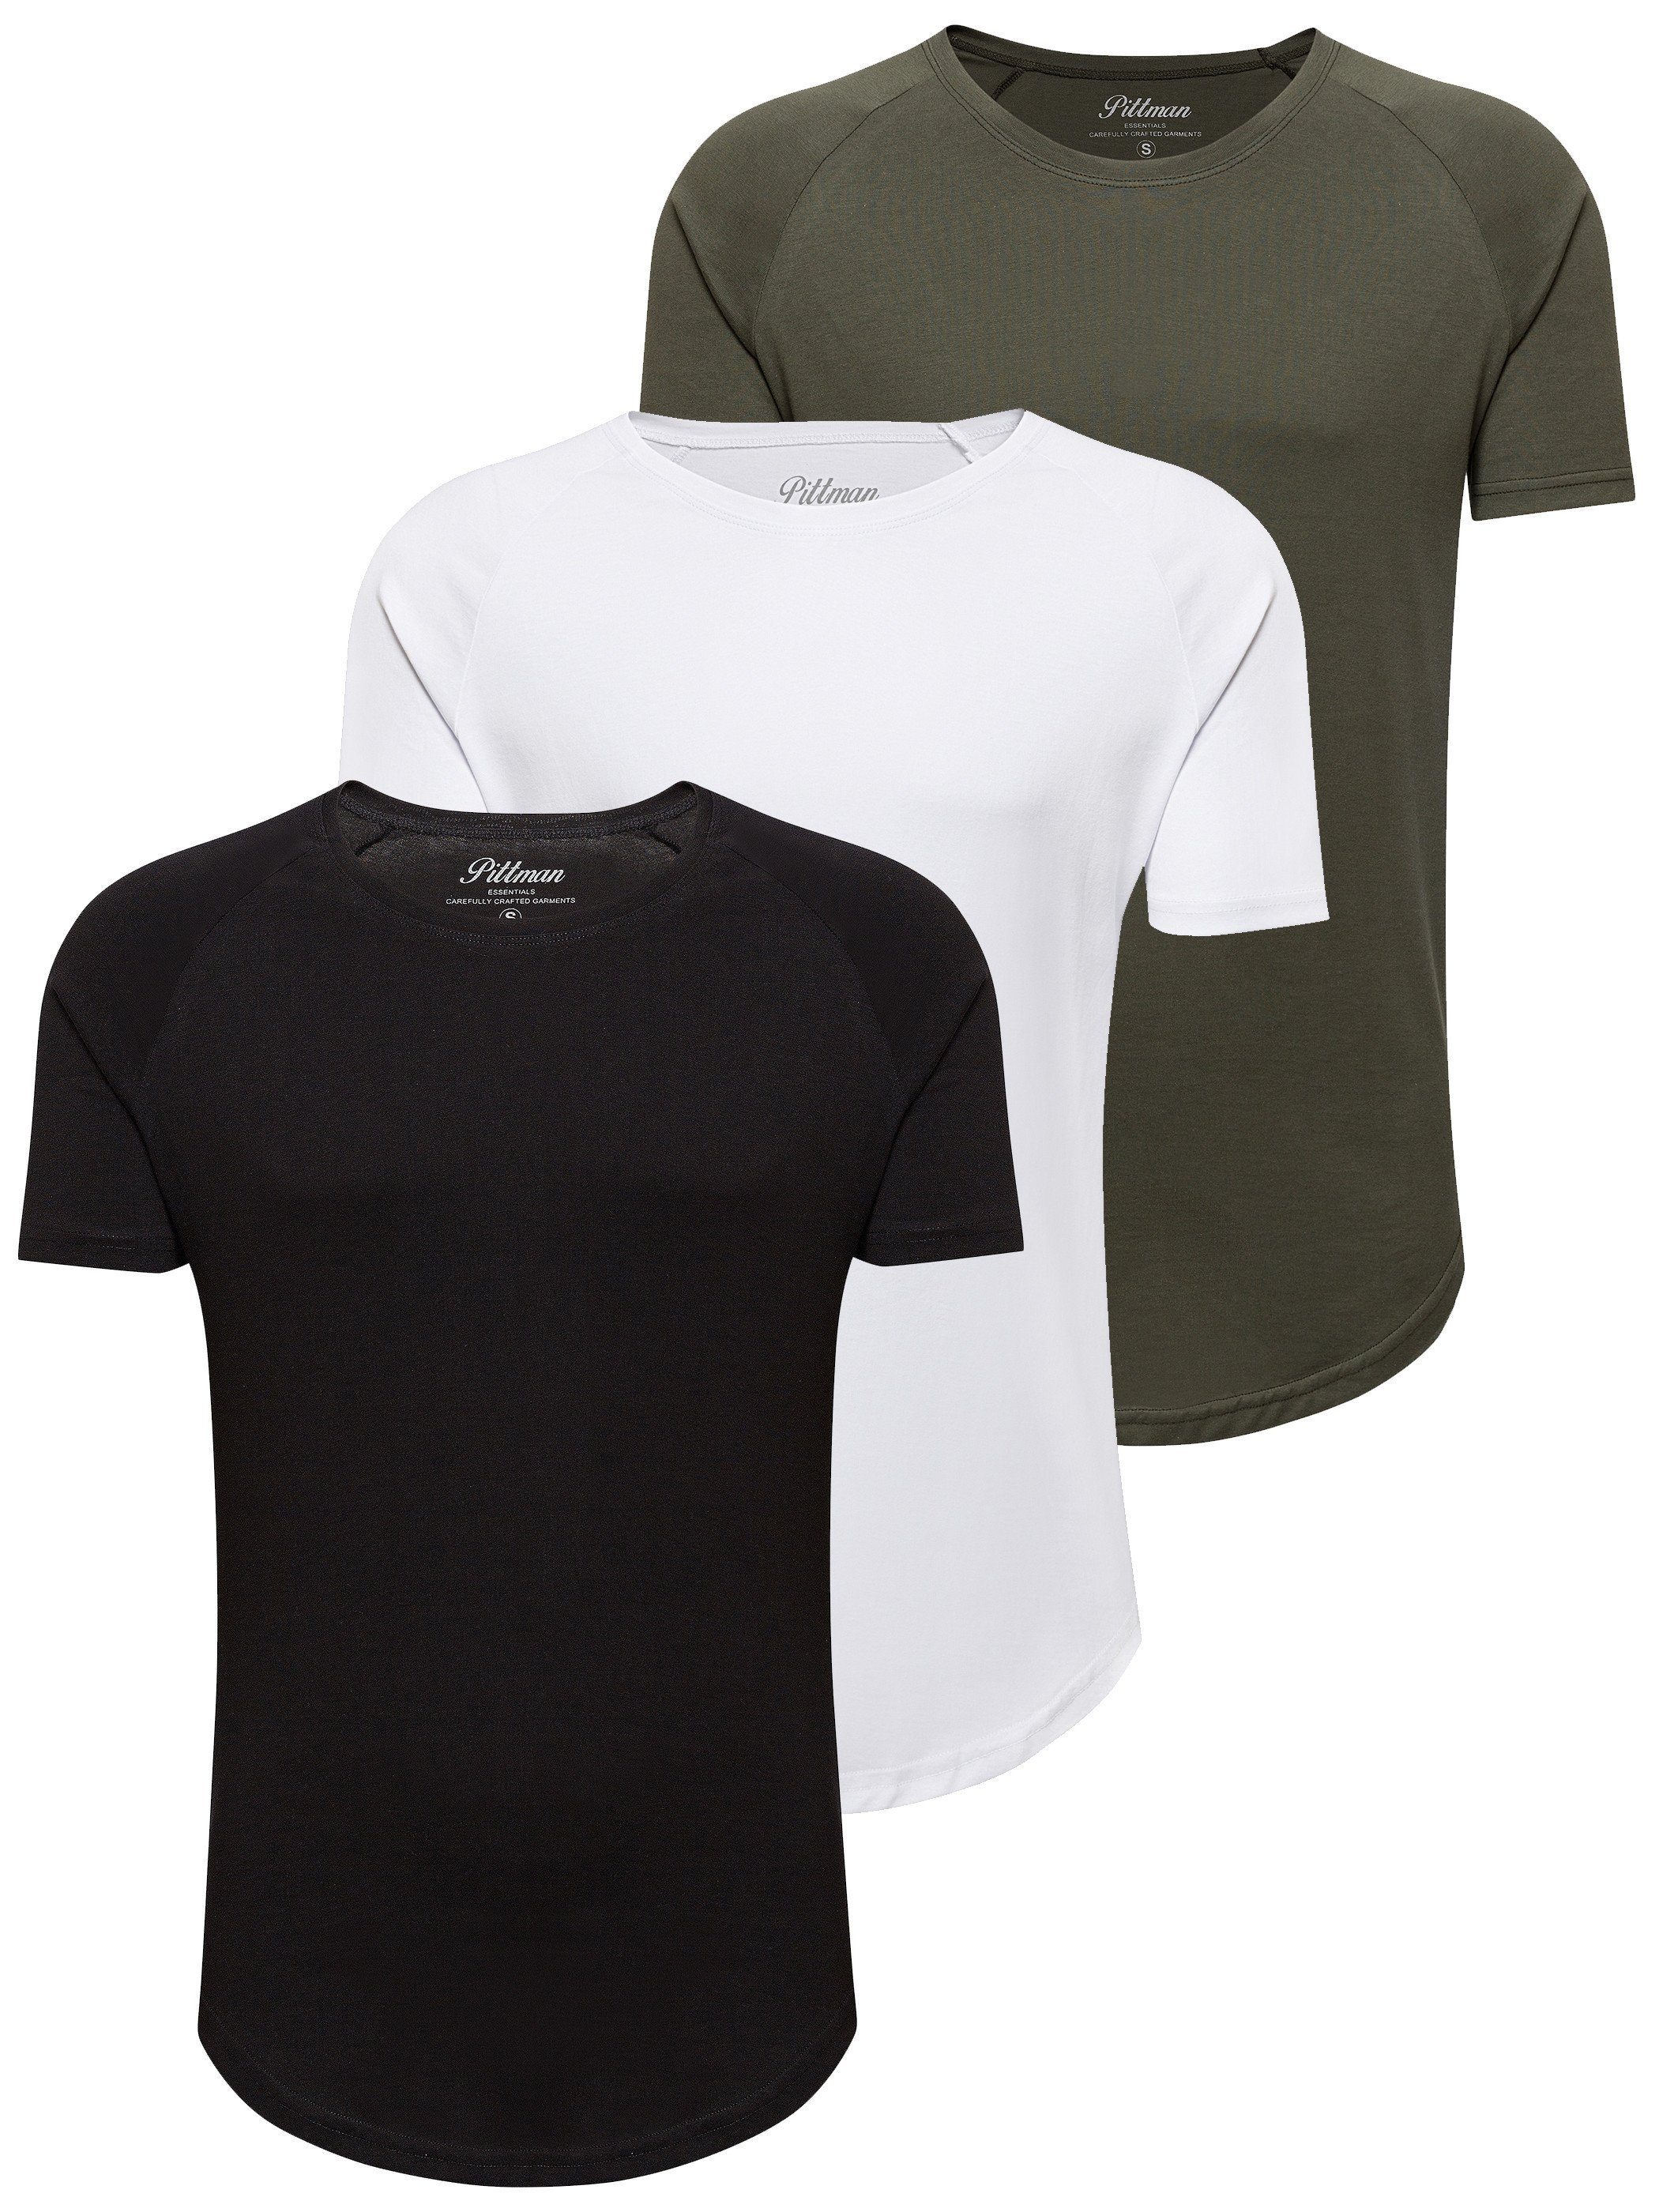 Pittman T-Shirt 3-Pack Herren T-Shirt Finn (Set, 3er-Pack) Oversize Rundhals T-Shirt schwarz-weiß-grün (Mix1)